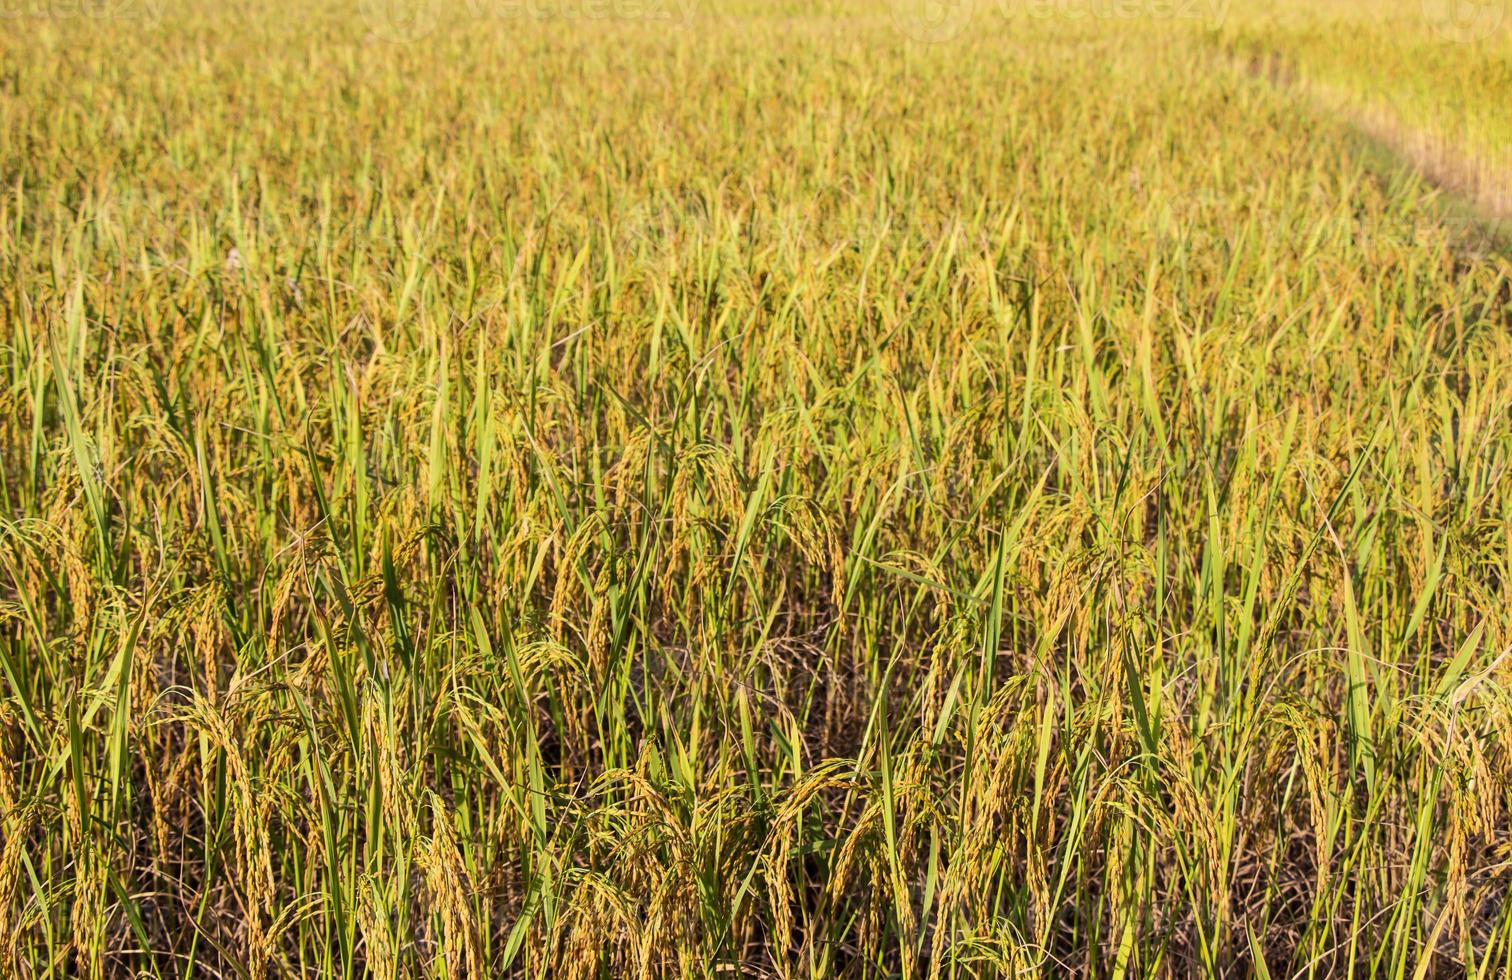 il riso è l'alimento base del popolo thailandese e quando il riso è giallo prima che i raccolti siano belli. foto